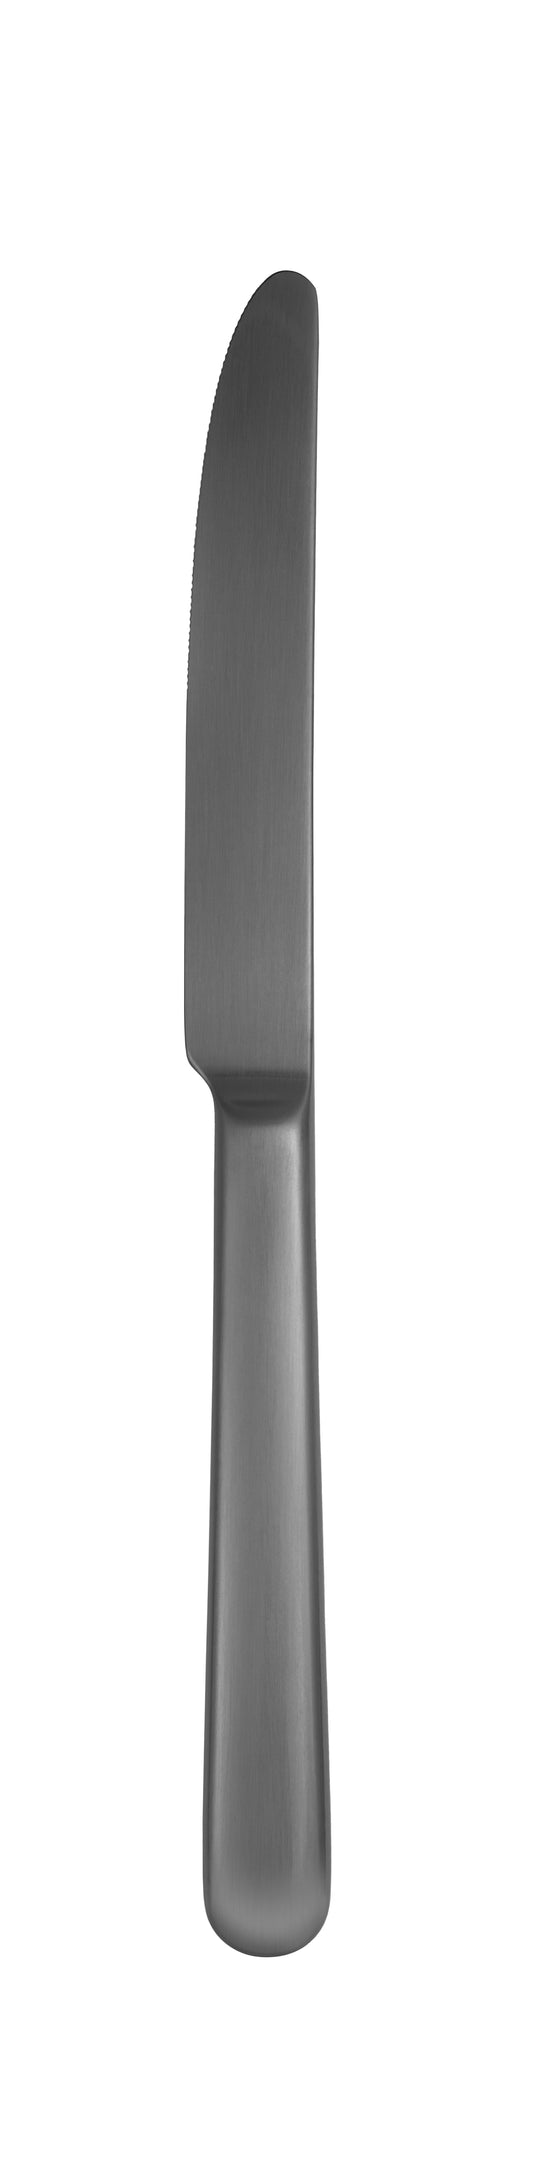 Table knife MB CARLTON PVD gun metal brushed 237mm